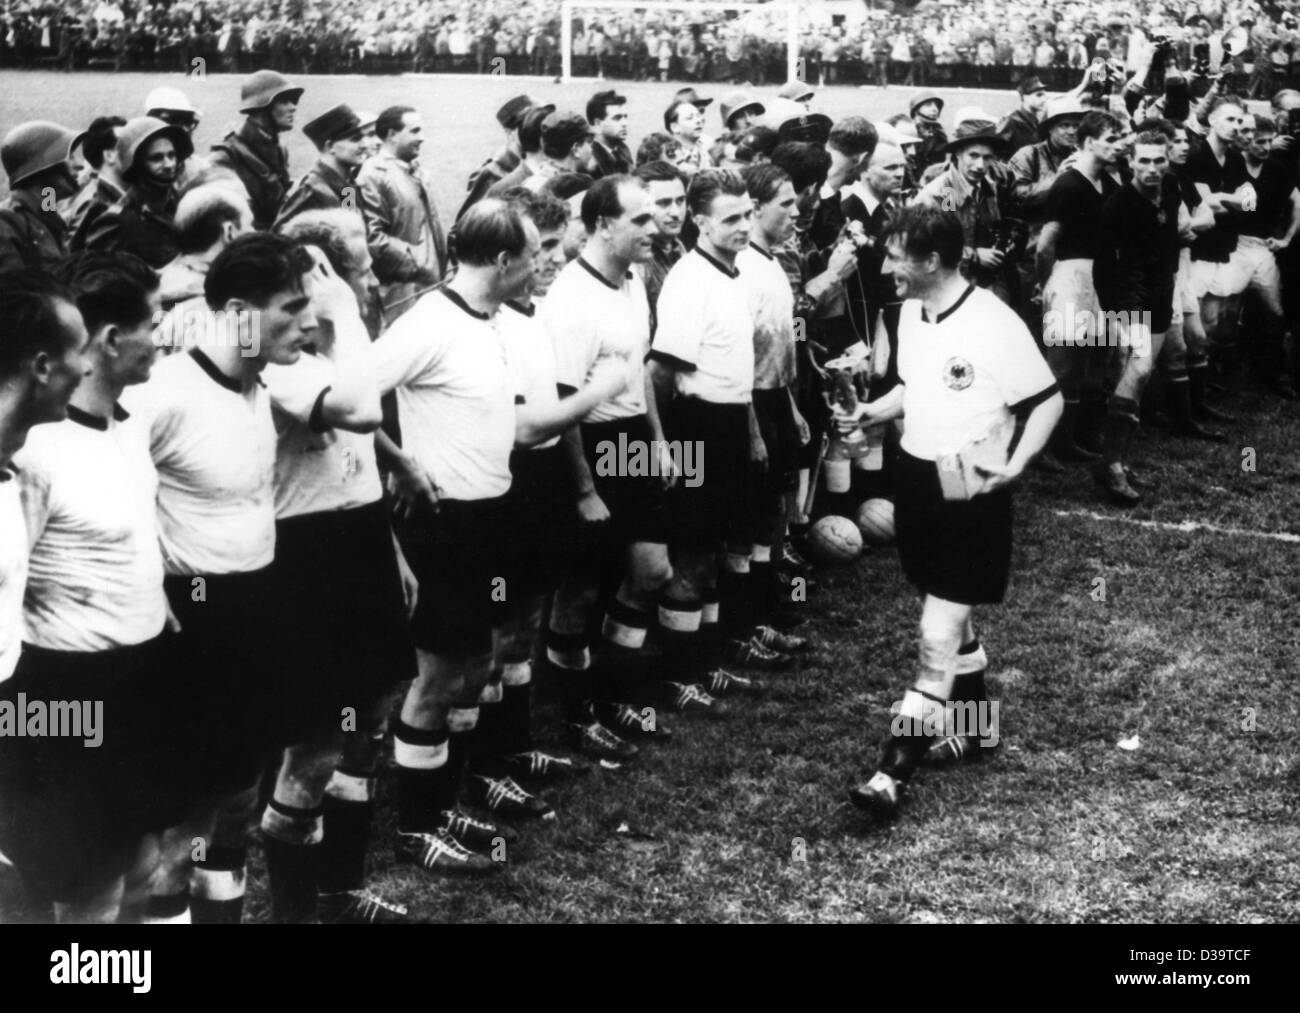 Dpa-Dateien) - Fritz Walter, Kapitän der deutschen  Fußball-Nationalmannschaft, WM-Pokal zu seinen Teamkollegen zeigt, nachdem  die deutsche Mannschaft das Finale gegen Ungarn bei der WM 1954 in Bern,  Schweiz, 4. Juli 1954 gewann.